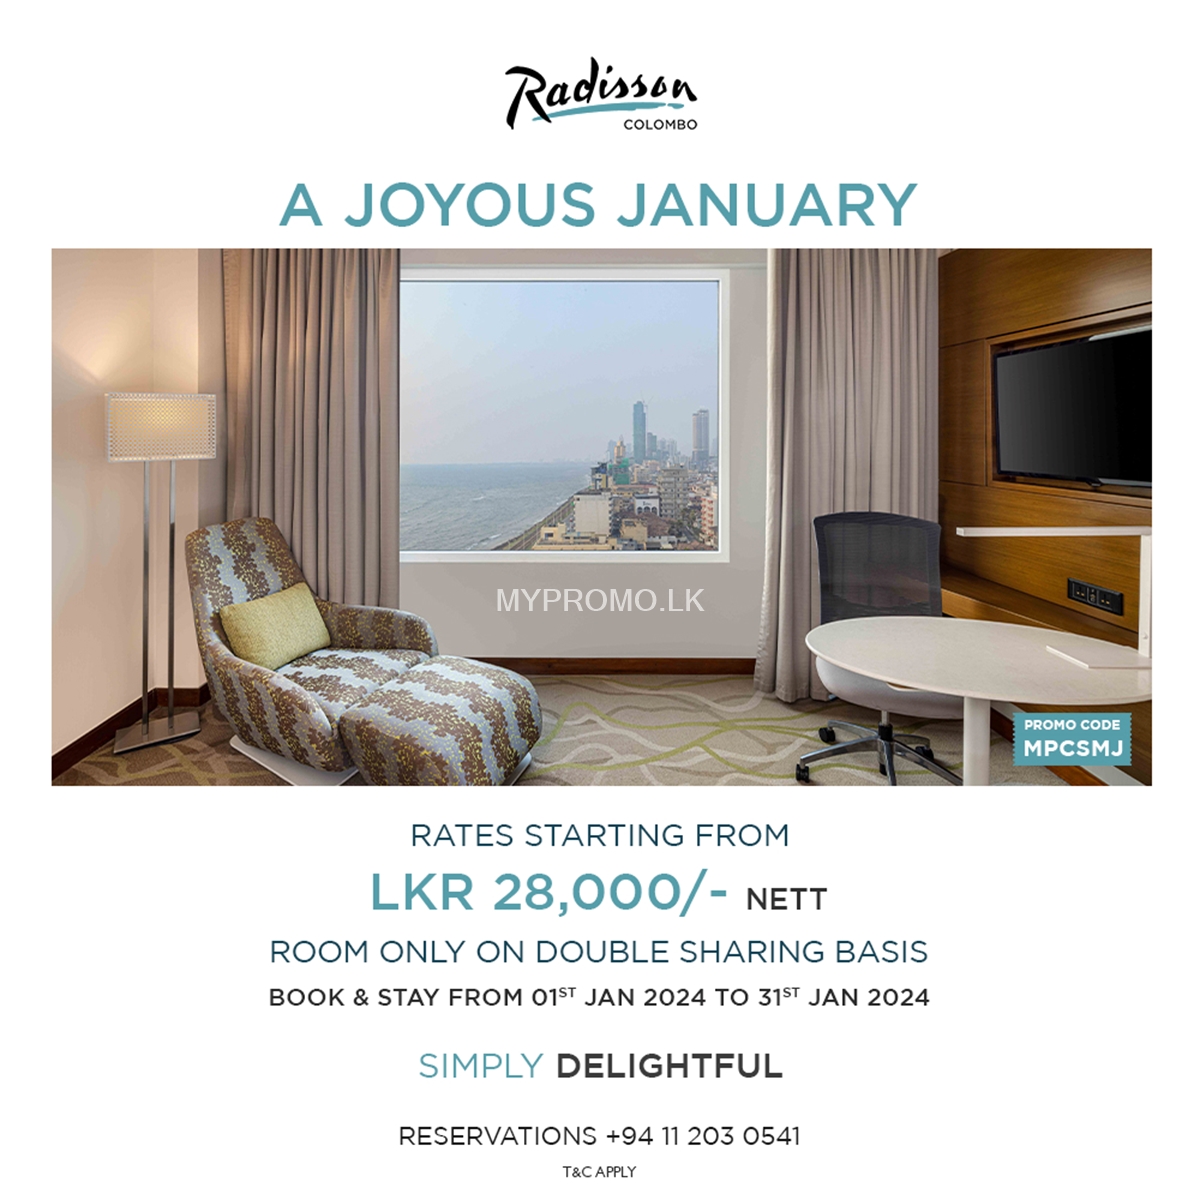 Enjoy a joyous January with Radisson Hotel Colombo